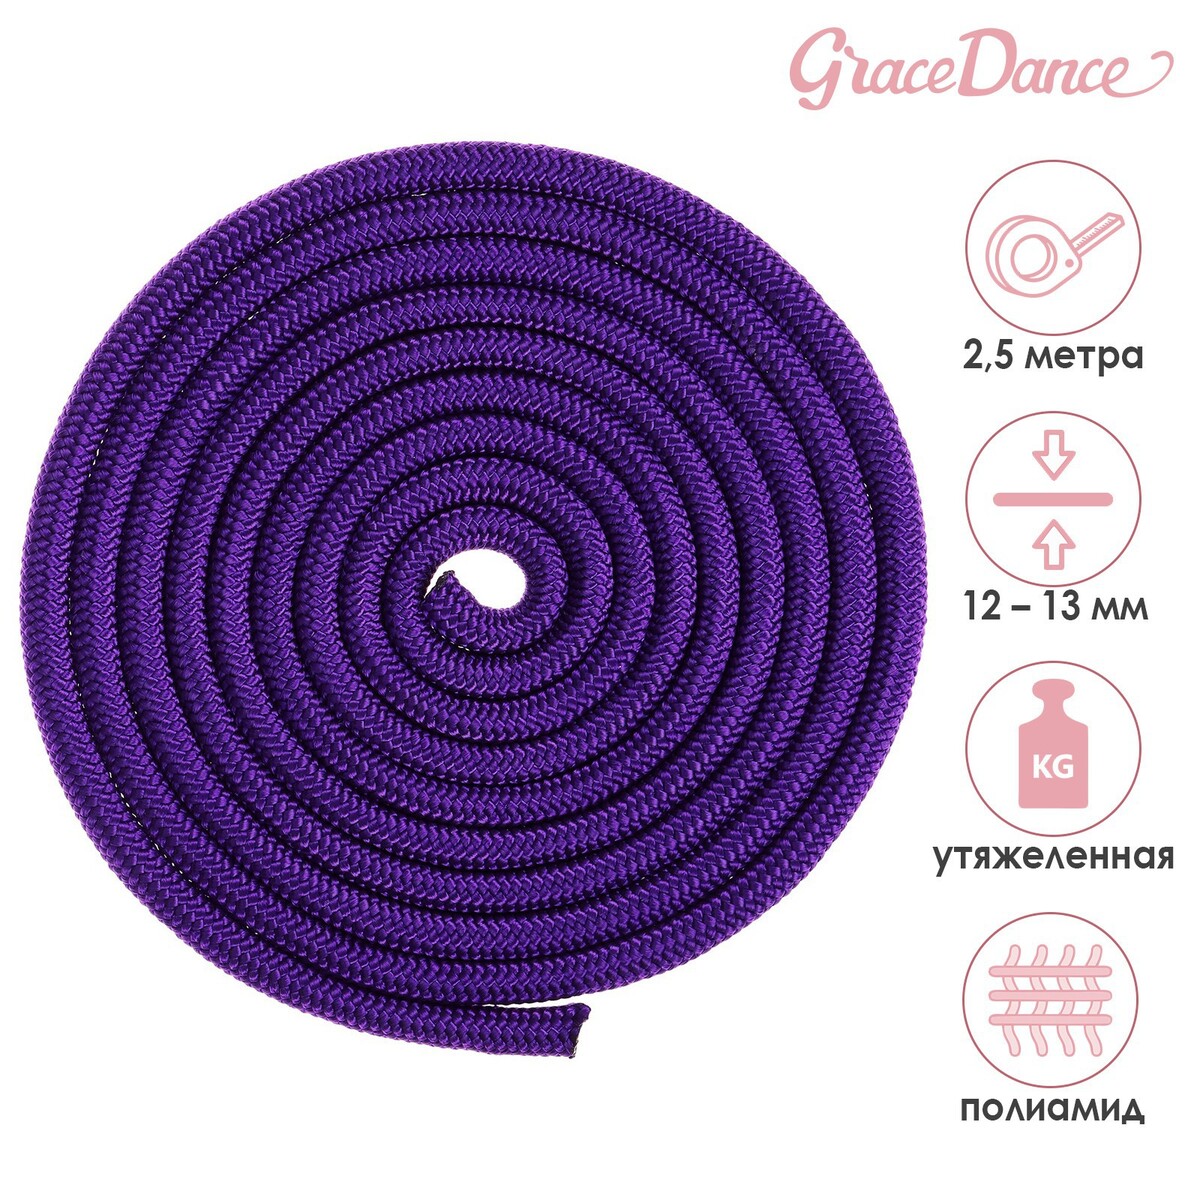 Скакалка для художественной гимнастики утяжеленная grace dance, 2,5 м, цвет фиолетовый скакалка гимнастическая с люрексом body form bf sk09 радуга 2 5м розовый голубой фиолетовый